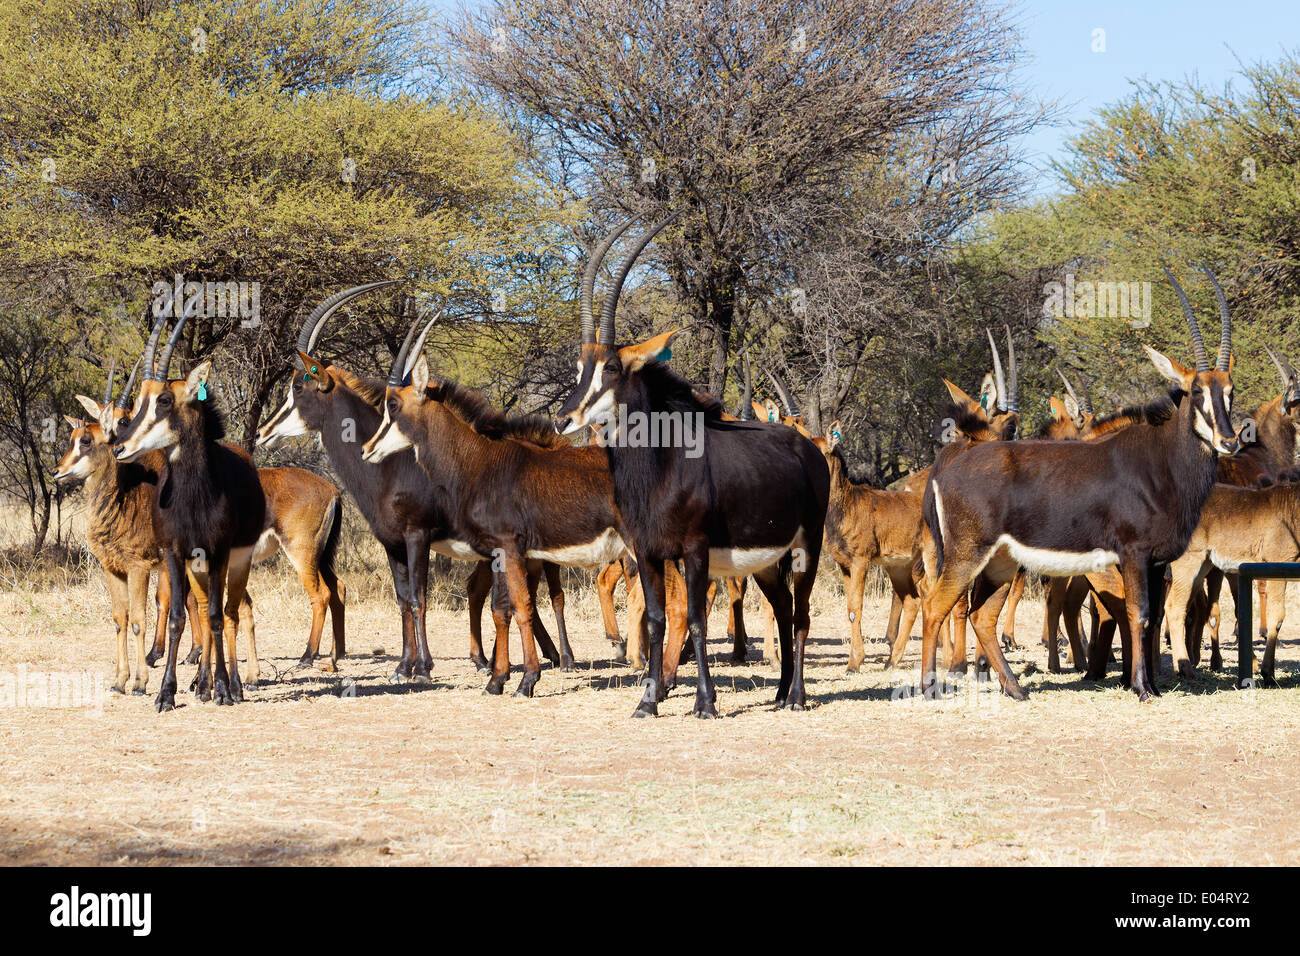 Un pequeño grupo de sable antelope (Hippotragus niger).Sudáfrica Foto de stock